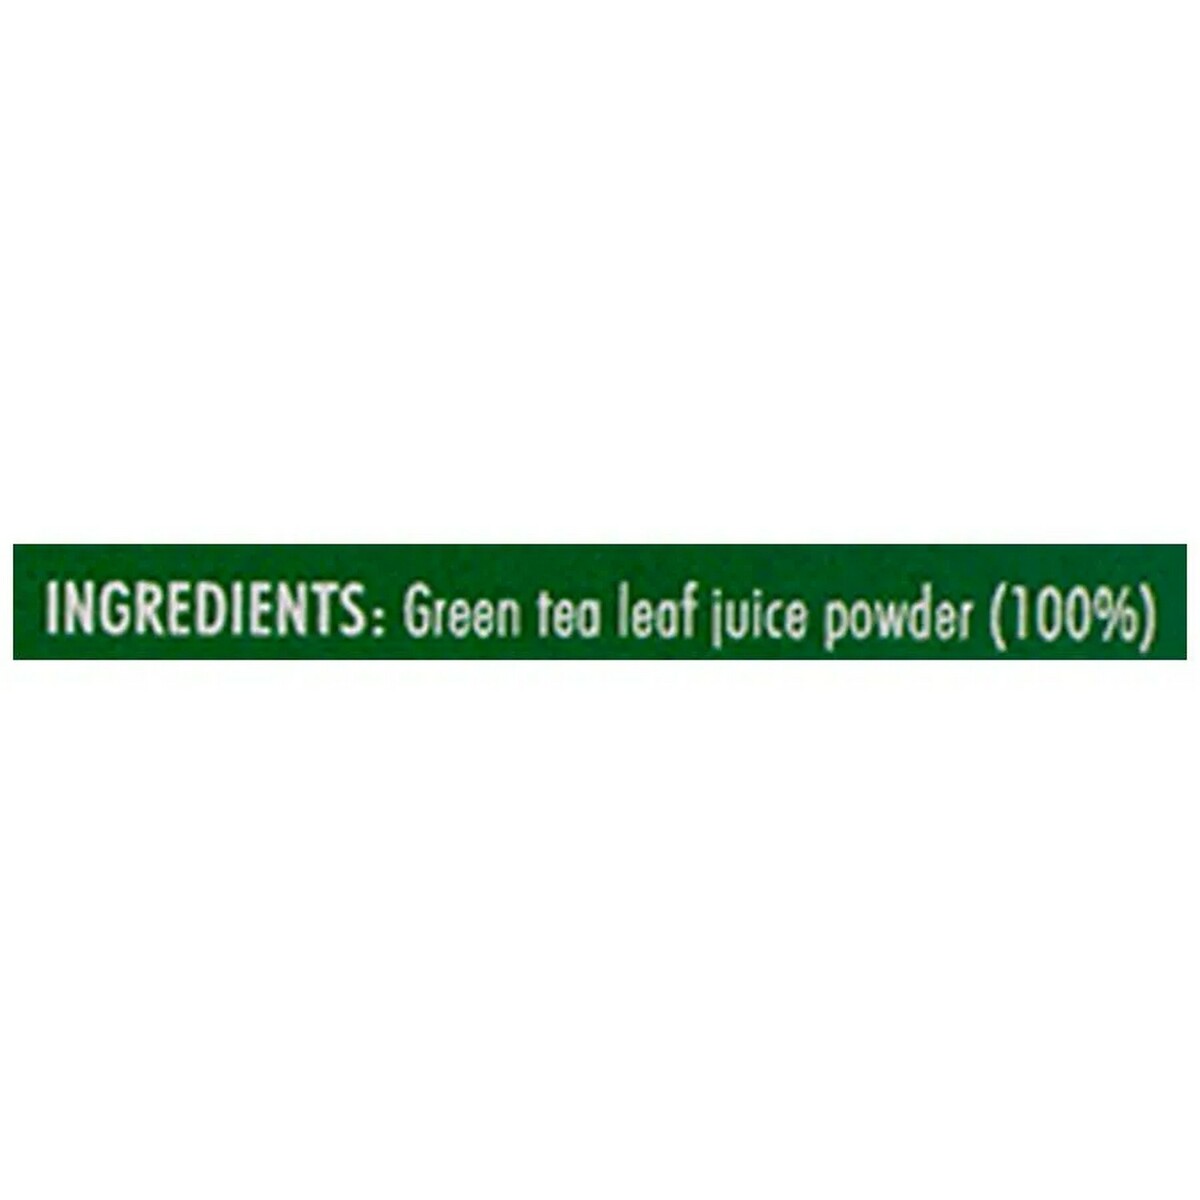 Sprig TE.A 100% Green Tea Pack 10's